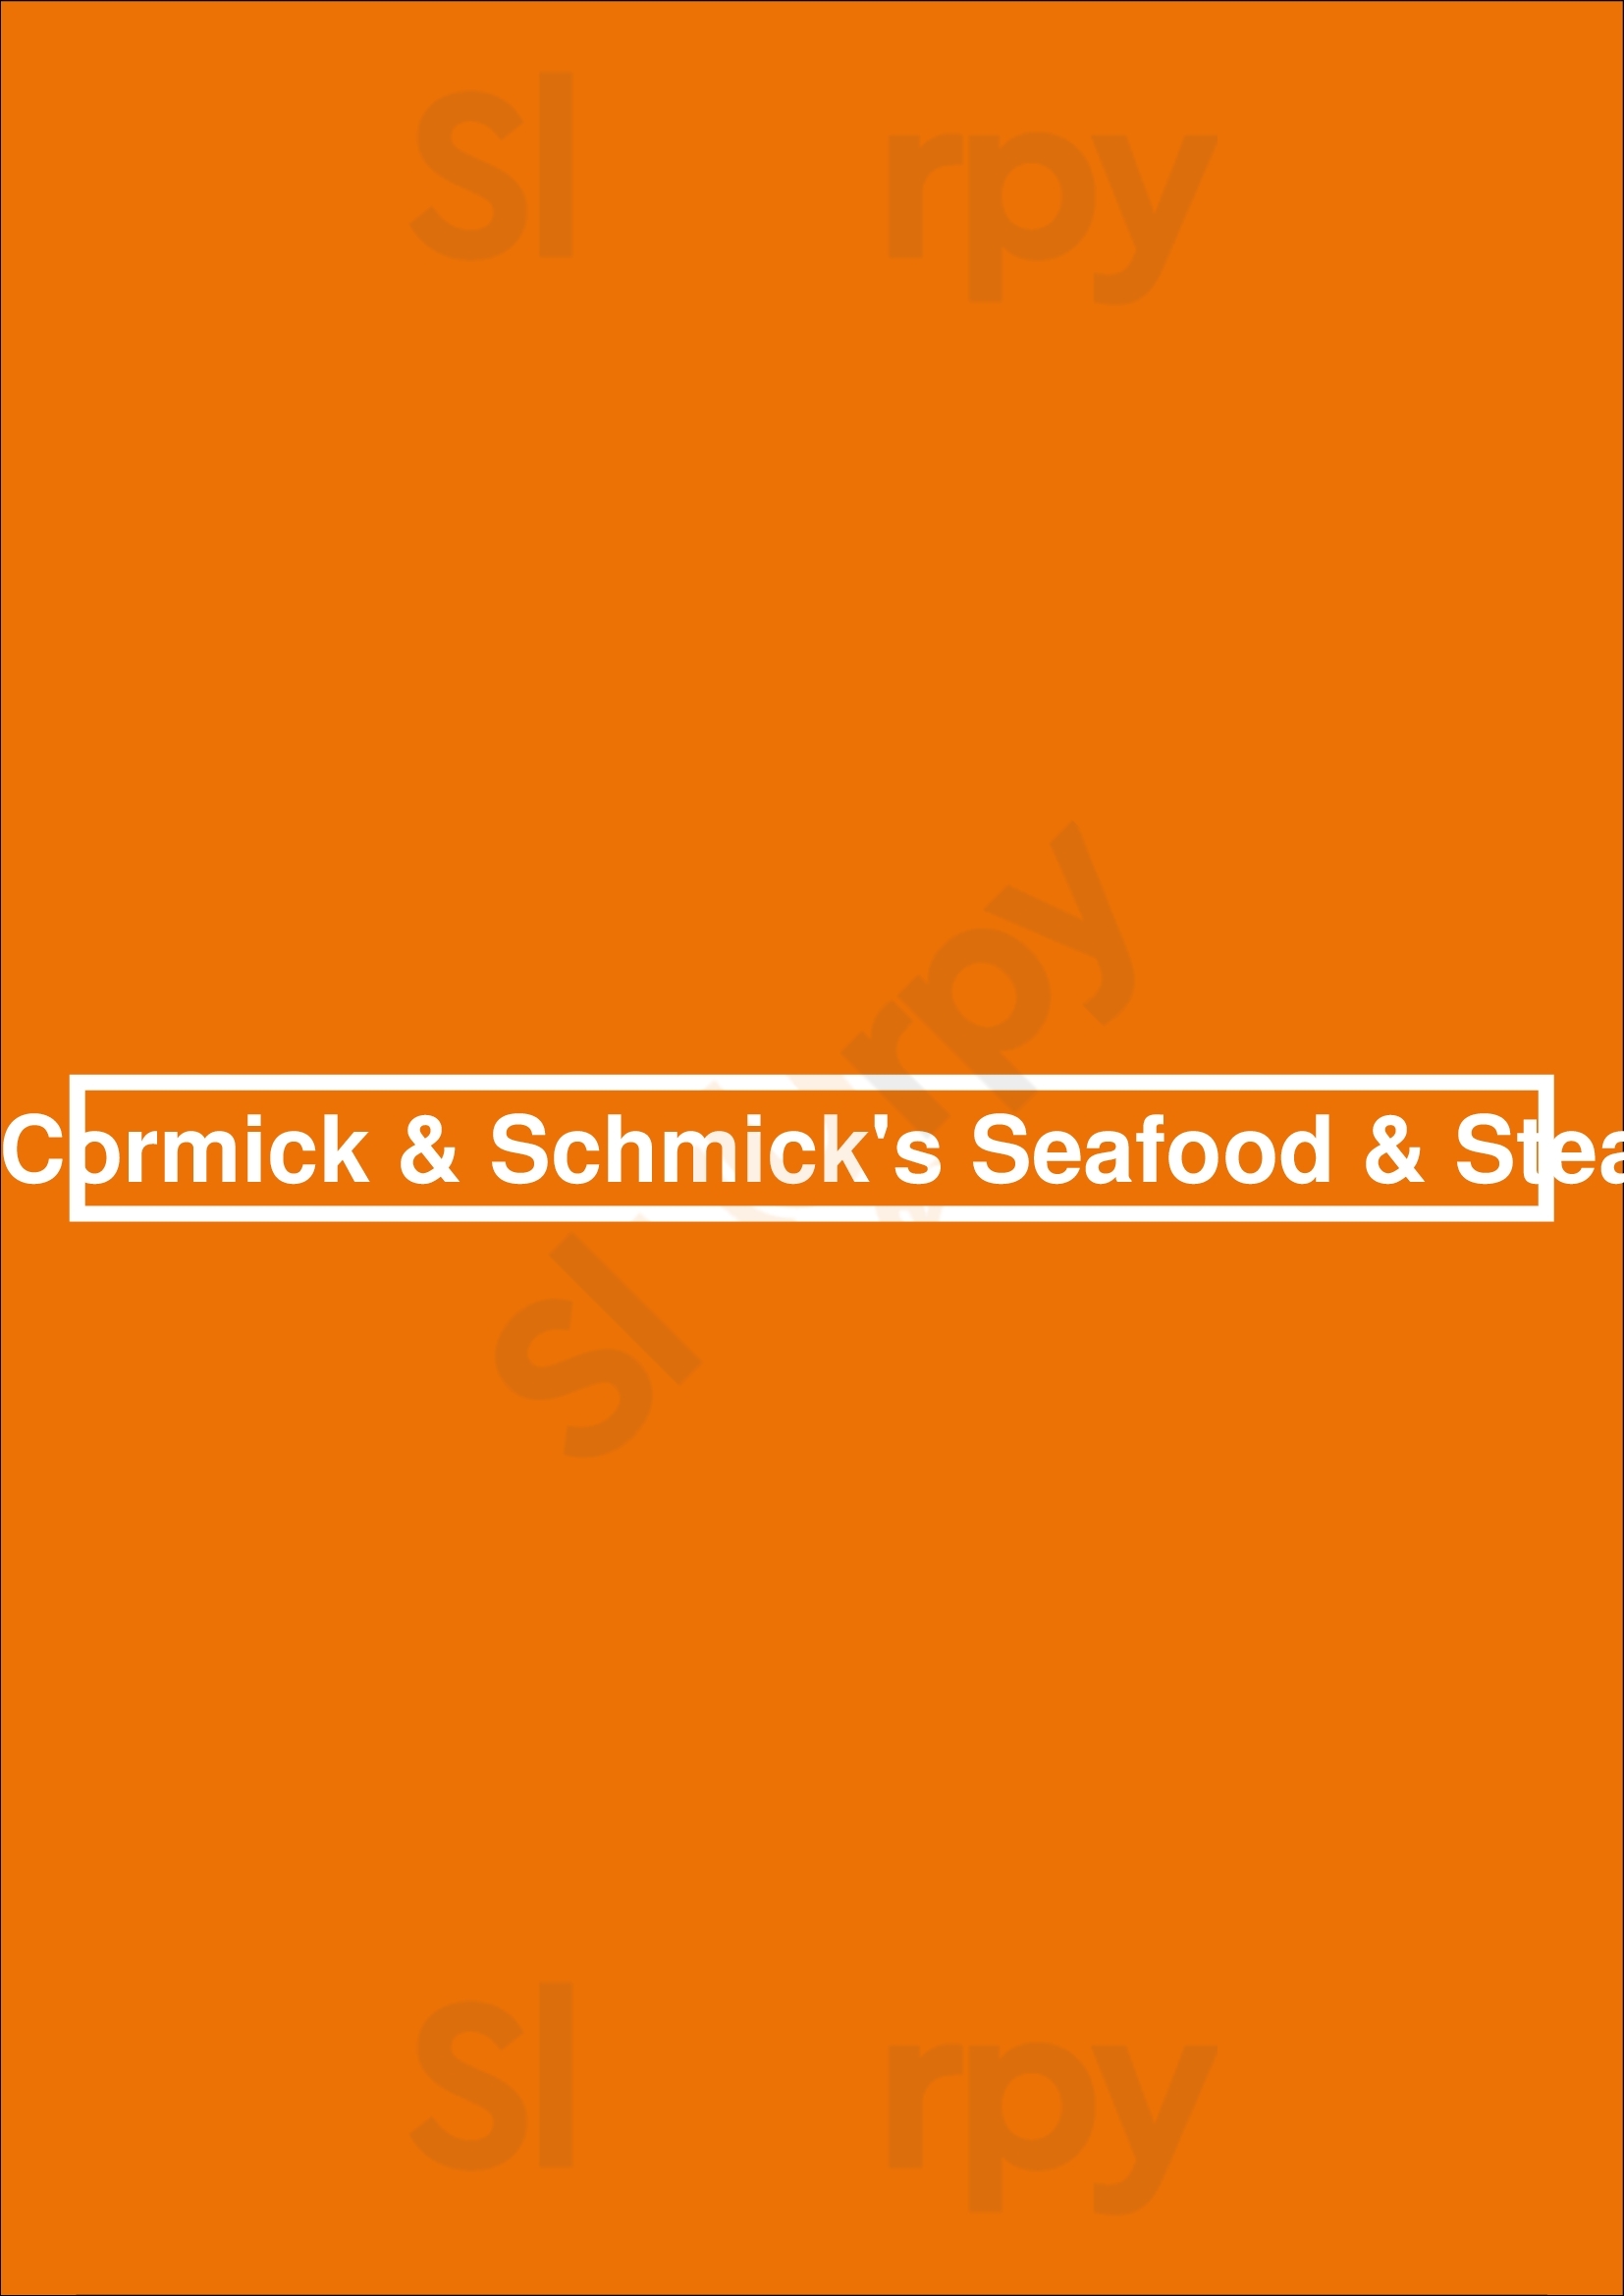 Mccormick & Schmick's Seafood & Steaks Cincinnati Menu - 1